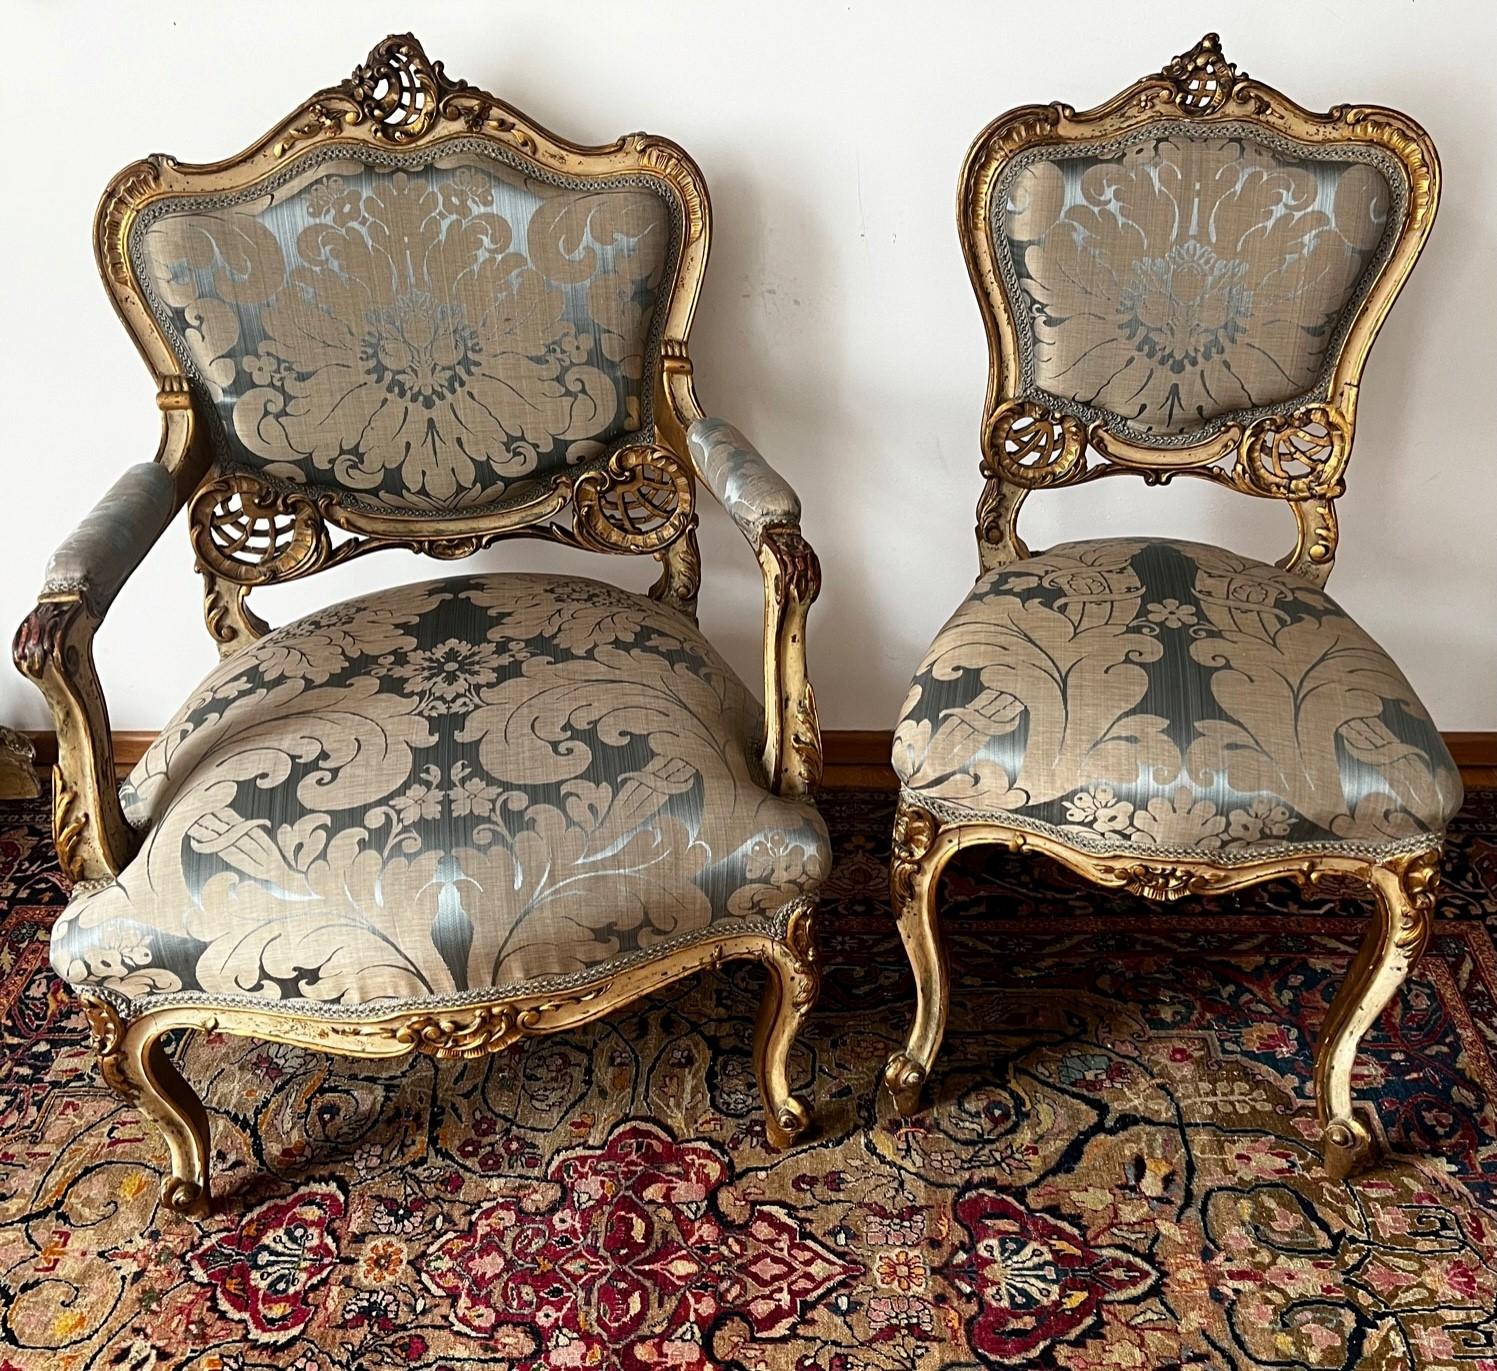 Außergewöhnlicher und exquisiter Satz originaler vergoldeter Louis XV-Salonstühle mit geschwungenen Holzkanten, aufwendig geschnitzten Oberflächen und grau-grüner Patina. Ein Sessel und ein Damensessel sind im Rokoko-Stil ausgeführt. Sie waren Teil